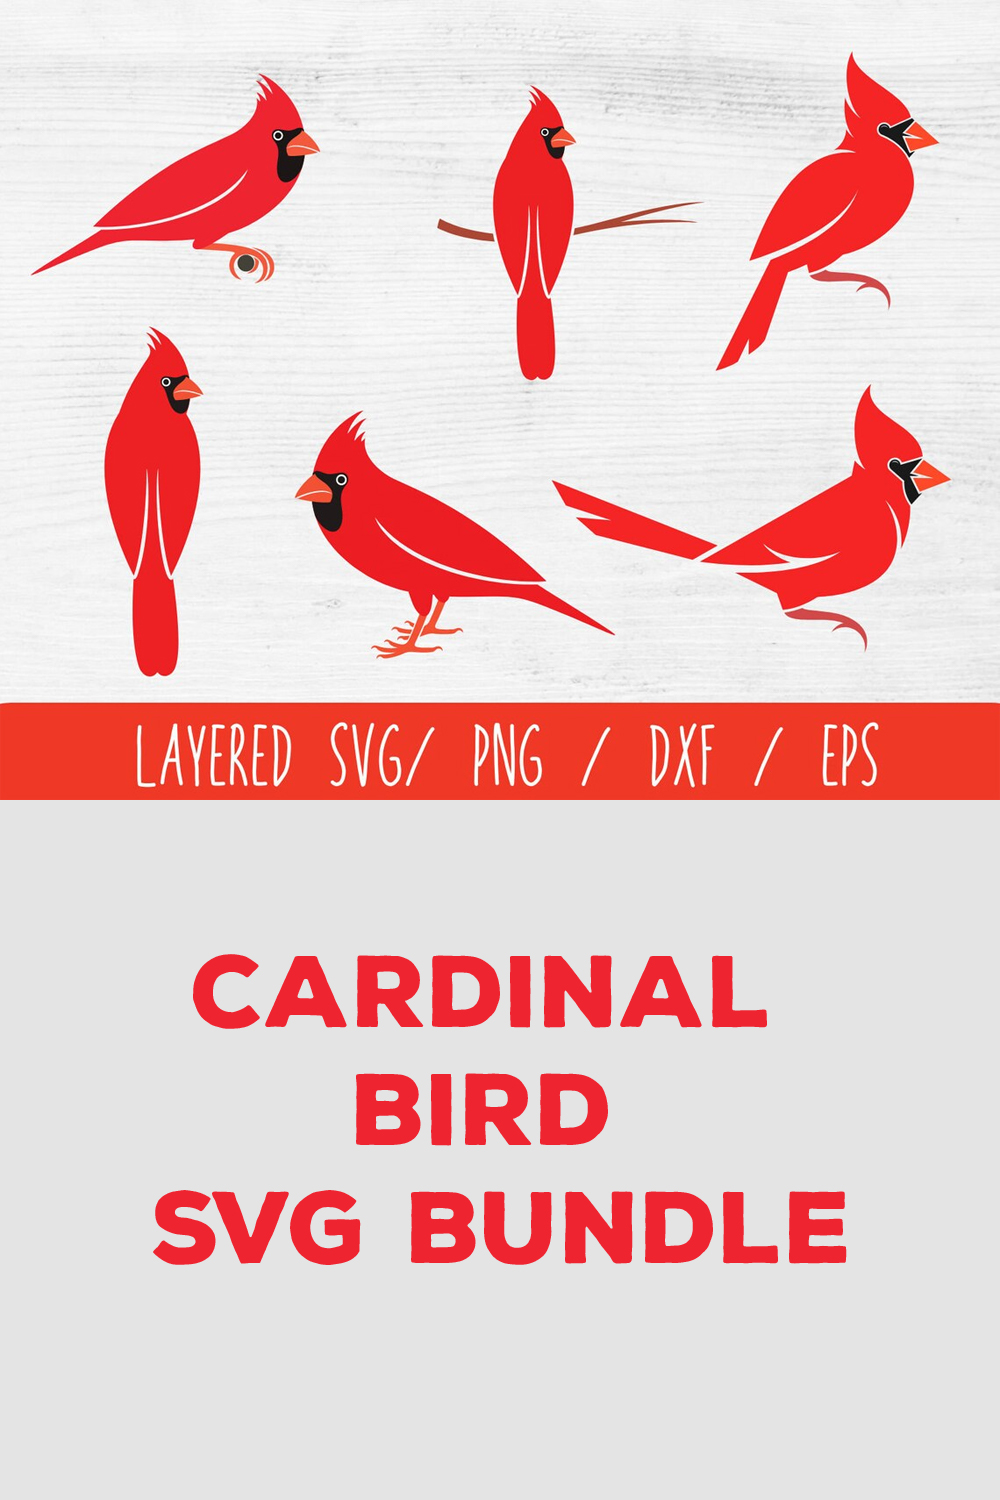 Cardinal bird svg bundle.